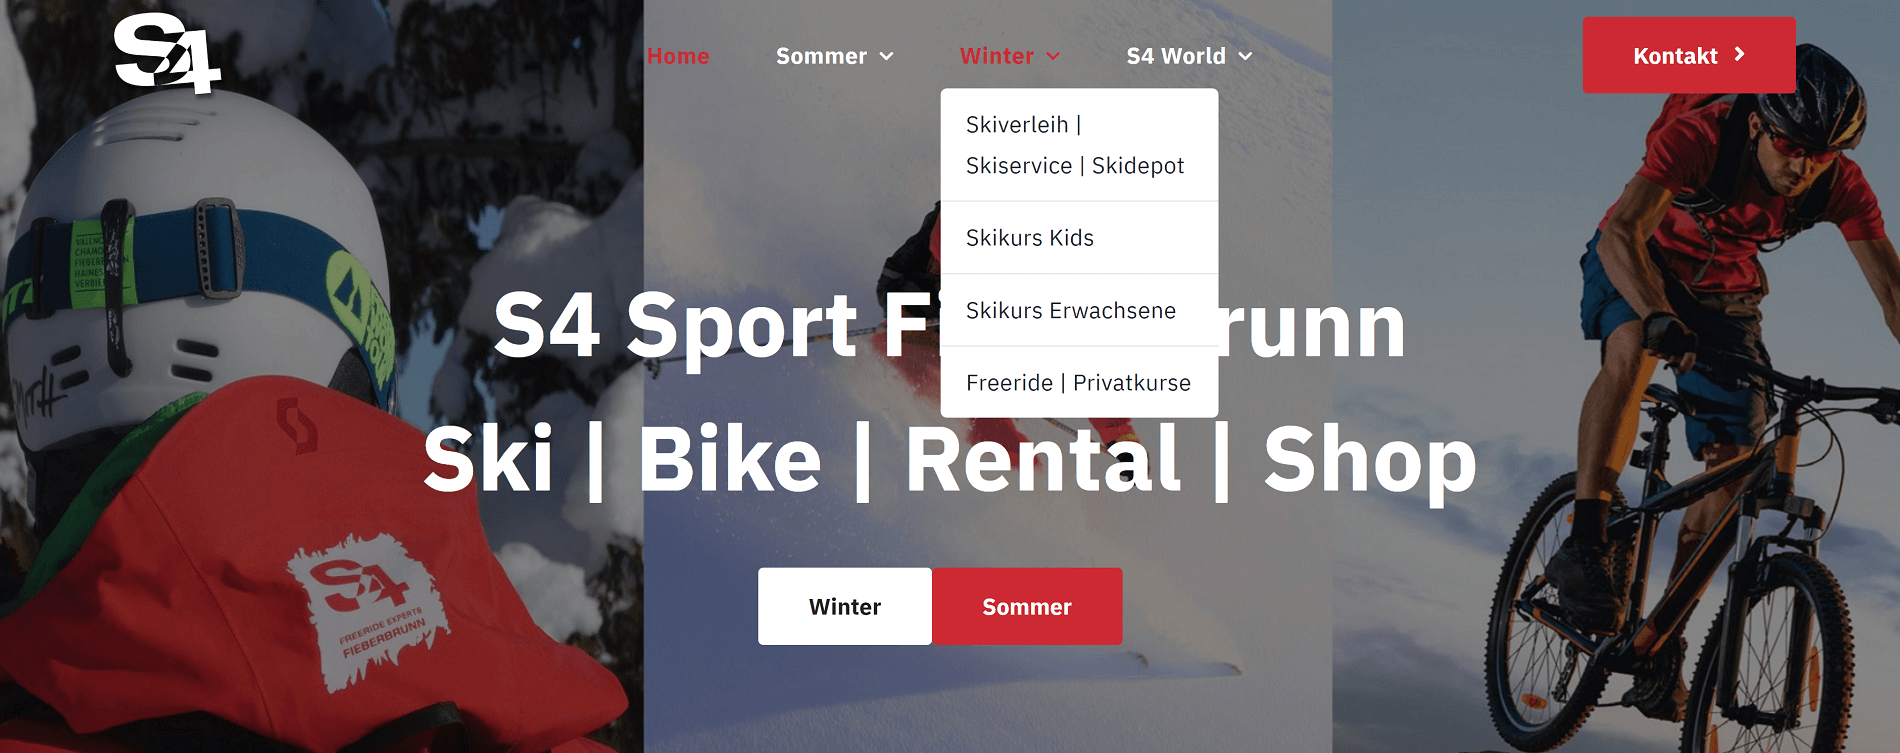 Skischule | Radshop | Verleih | Shop